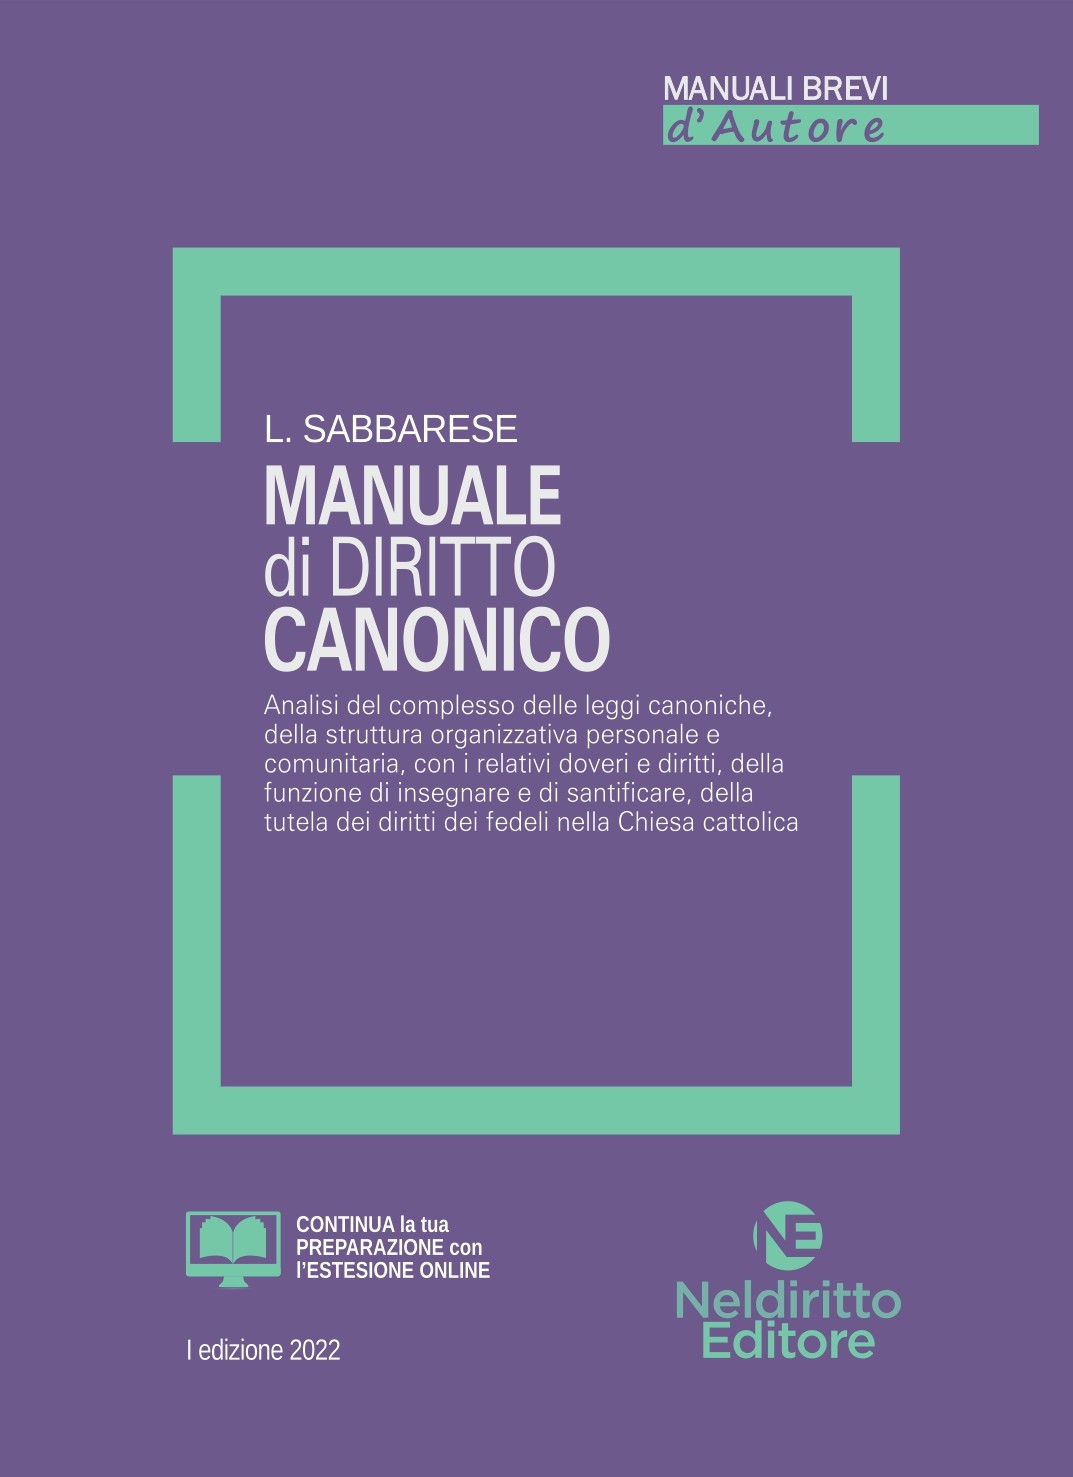 Manuale Breve di Diritto Canonico 2022